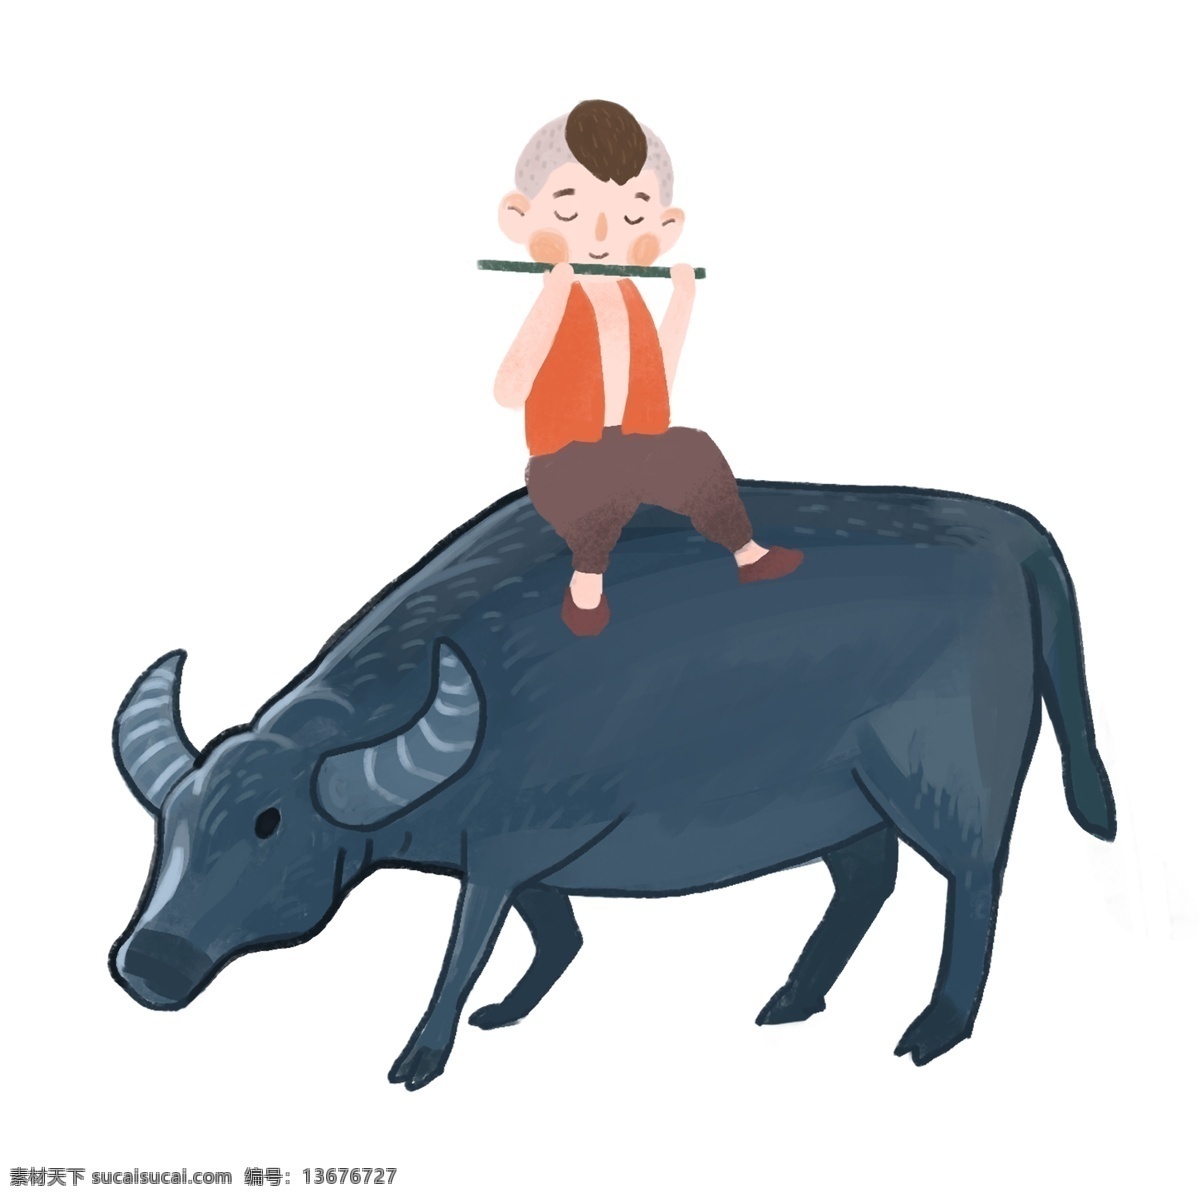 一个 坐在 牛 背上 吹 笛 小孩 放牛娃 牧童 牛背 吹笛 儿童 放牛 吹笛子的牧童 放牛的牧童 牛背上的小孩